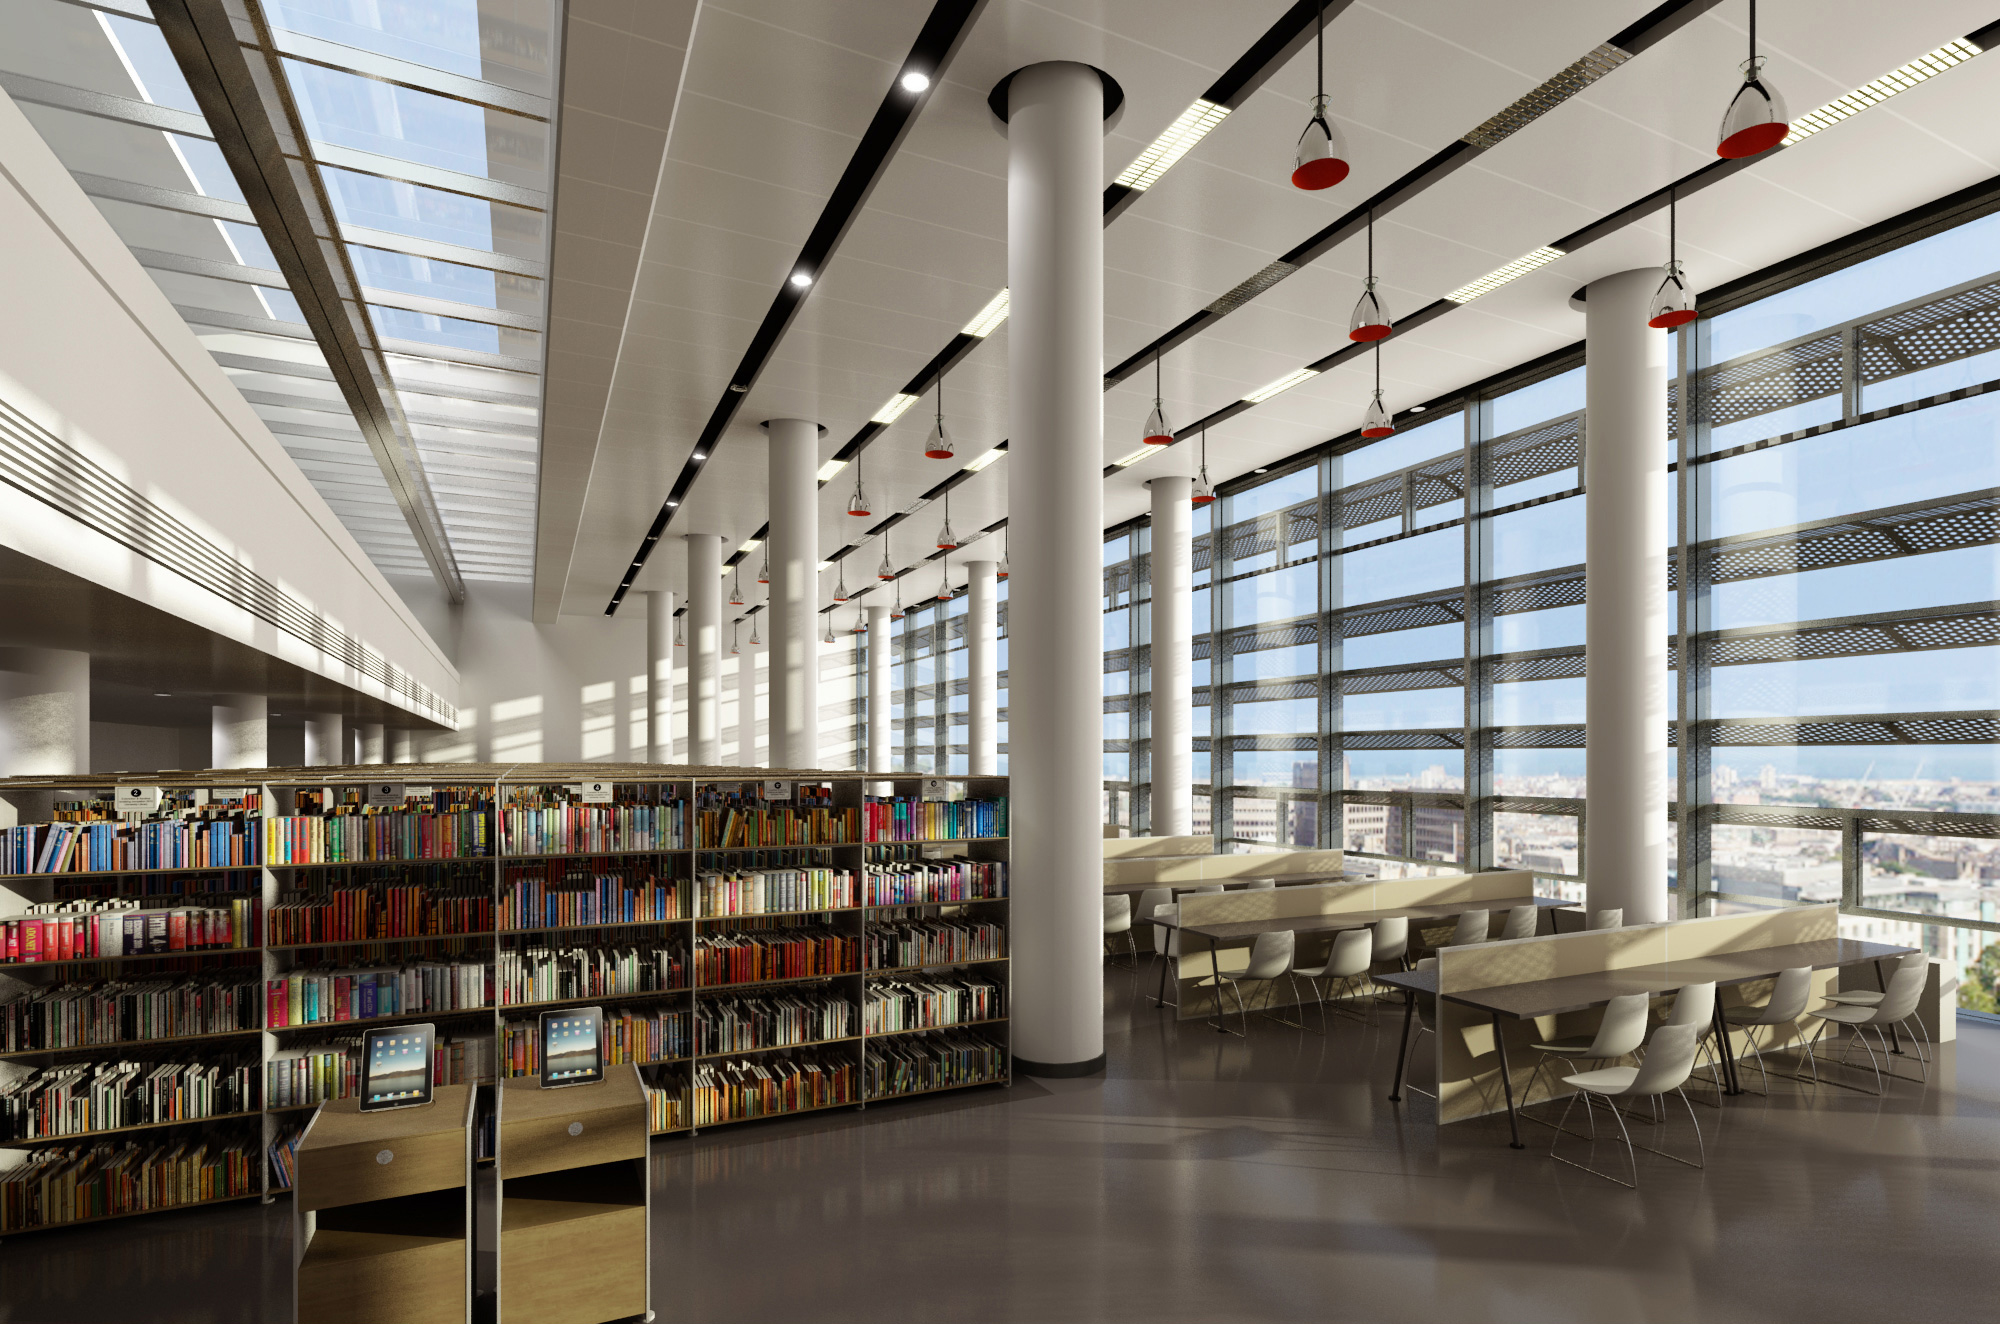 Ld library. Йельский университет библиотека. Библиотека Женевского университета. White библиотека. Библиотека Луи Нюсера (Ницца, Франция,.